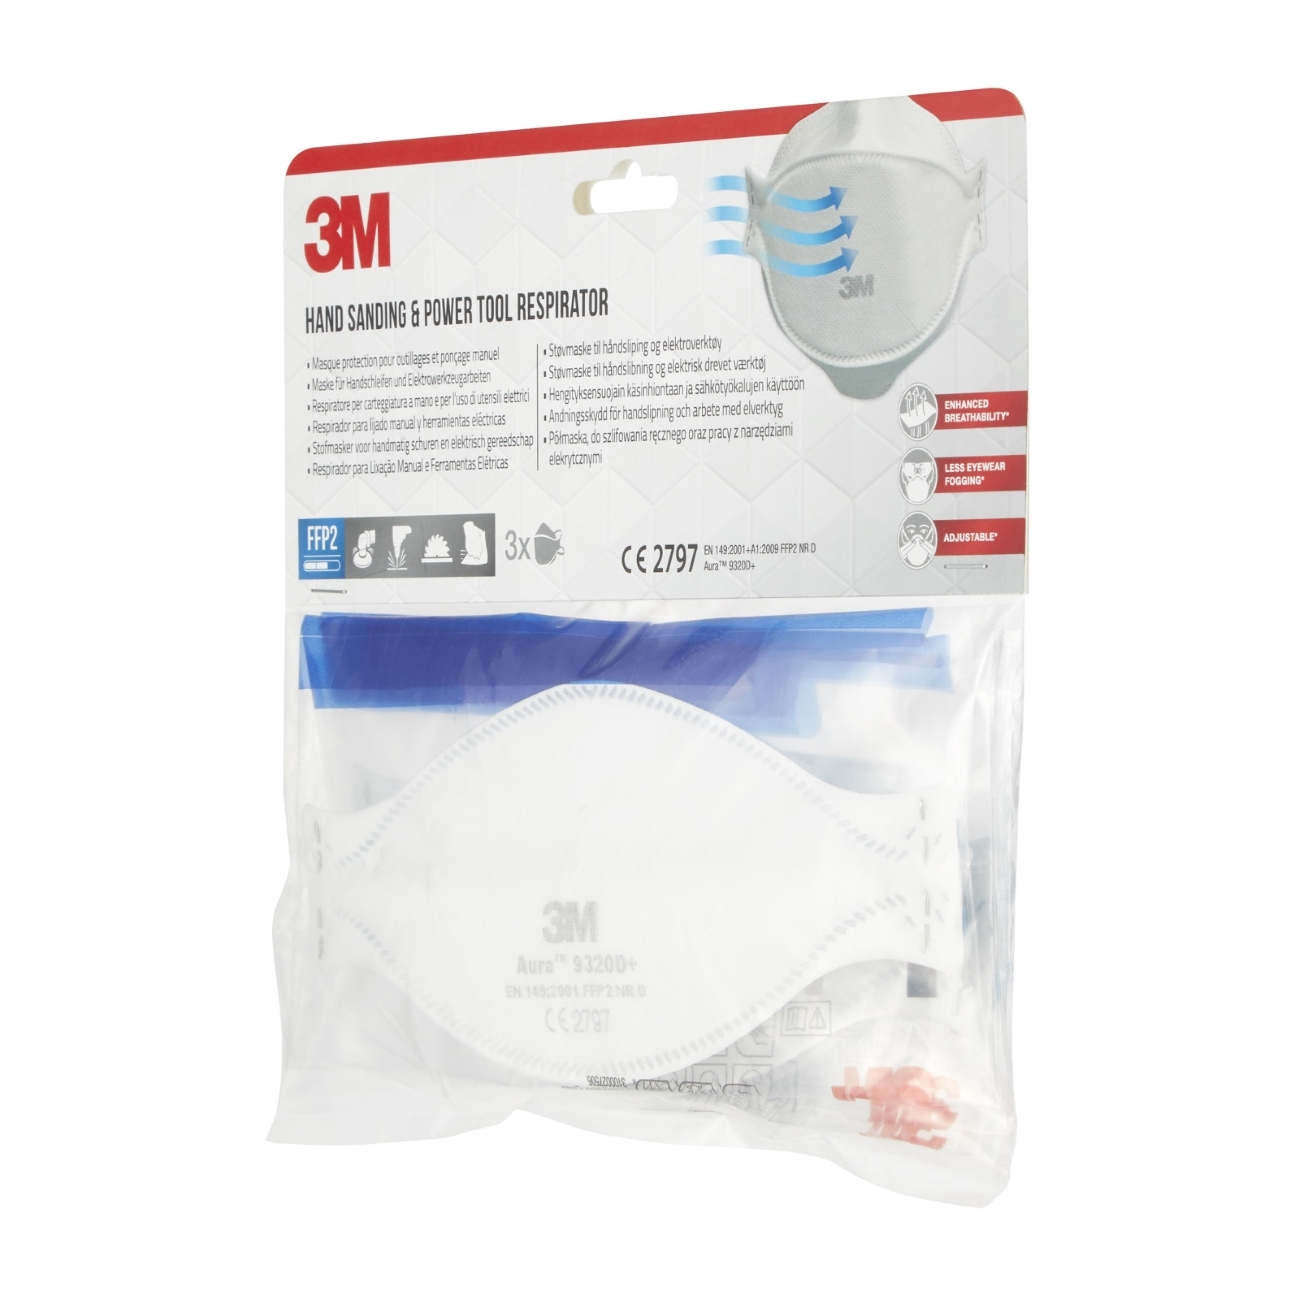 3M 9320D+ Aura Masque de protection respiratoire FFP2, jusqu'à 10 fois la valeur limite, paquet = 3pcs, (emballage hygiénique individuel)